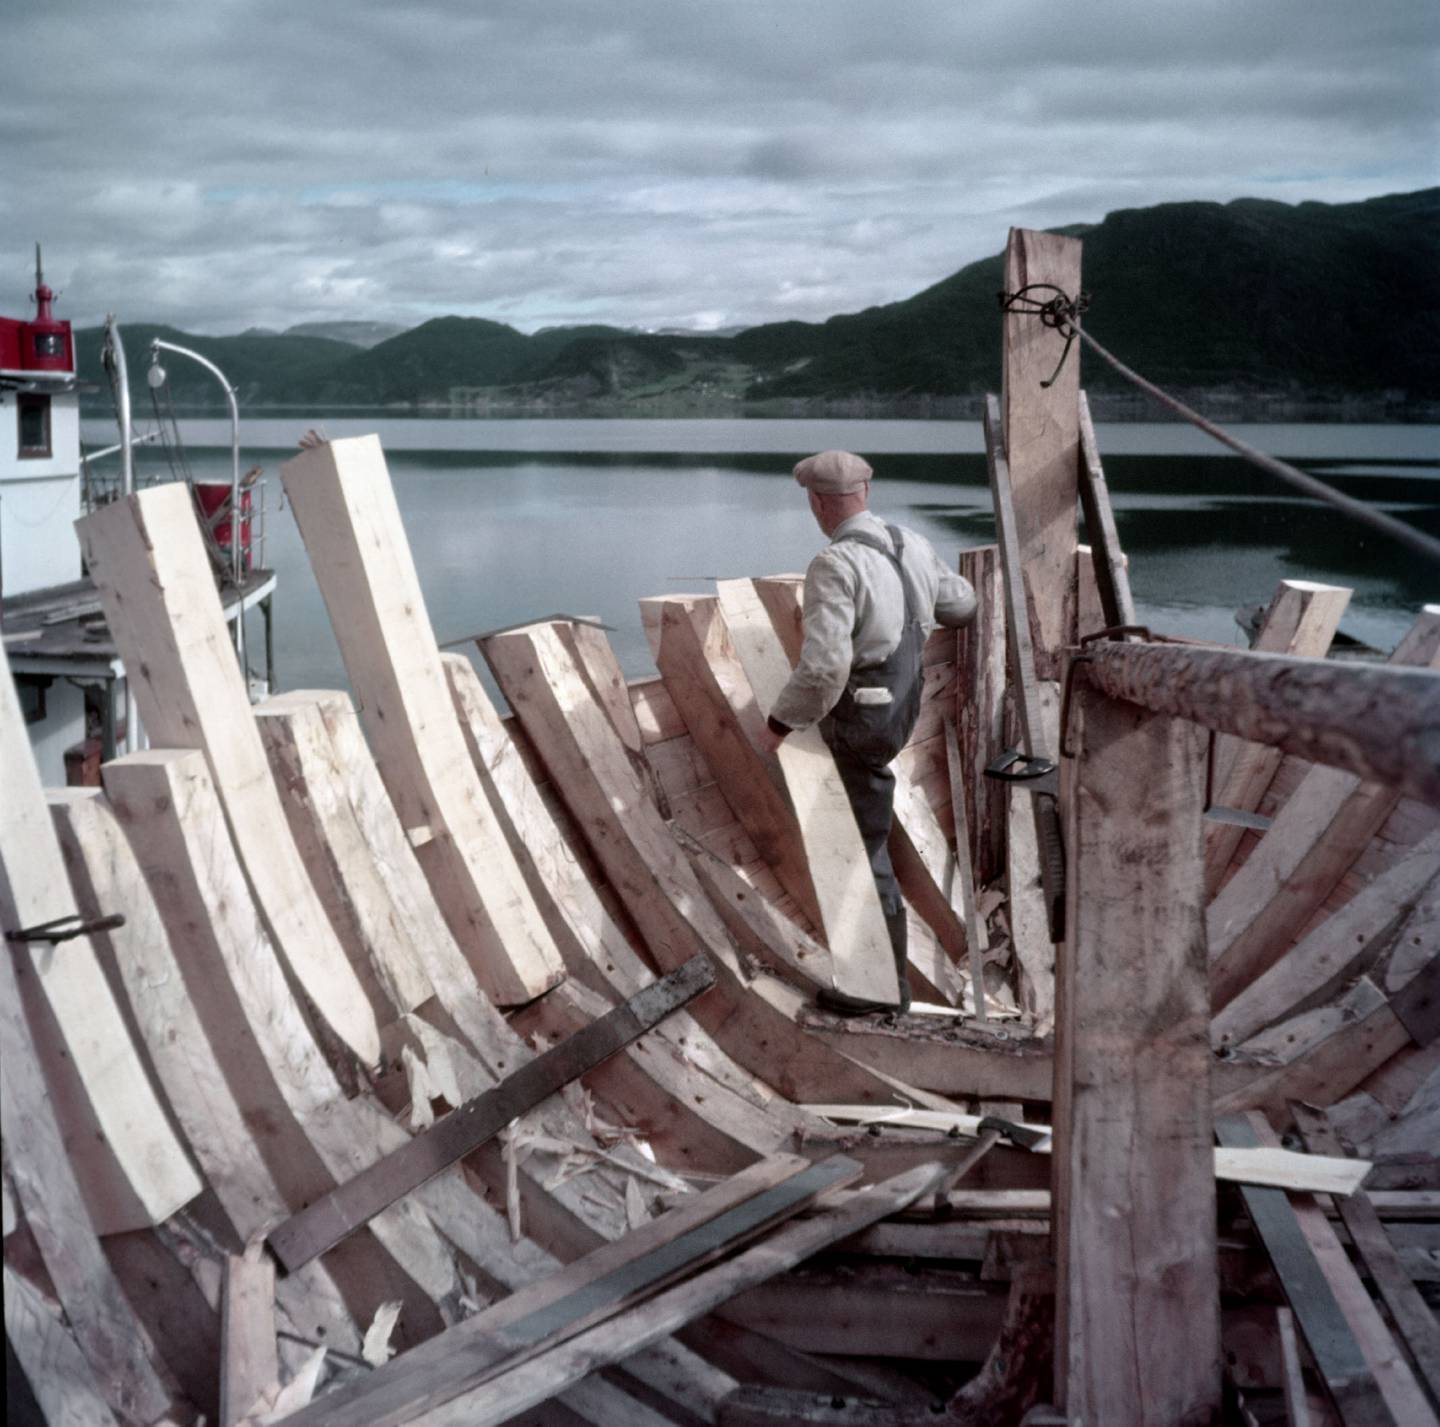 TREBÅTBYGGER: En trebåtbygger arbeider med bygging eller reparasjon av trebåter. Tidligere var det vanlig at fiskebåter ble bygget i tre. Her fra Rognan i 1953, kjent som stedet hvor fiskeskøyter bygges og repareres. Foto: Sverre A. Børretzen / Aktuell / NTB